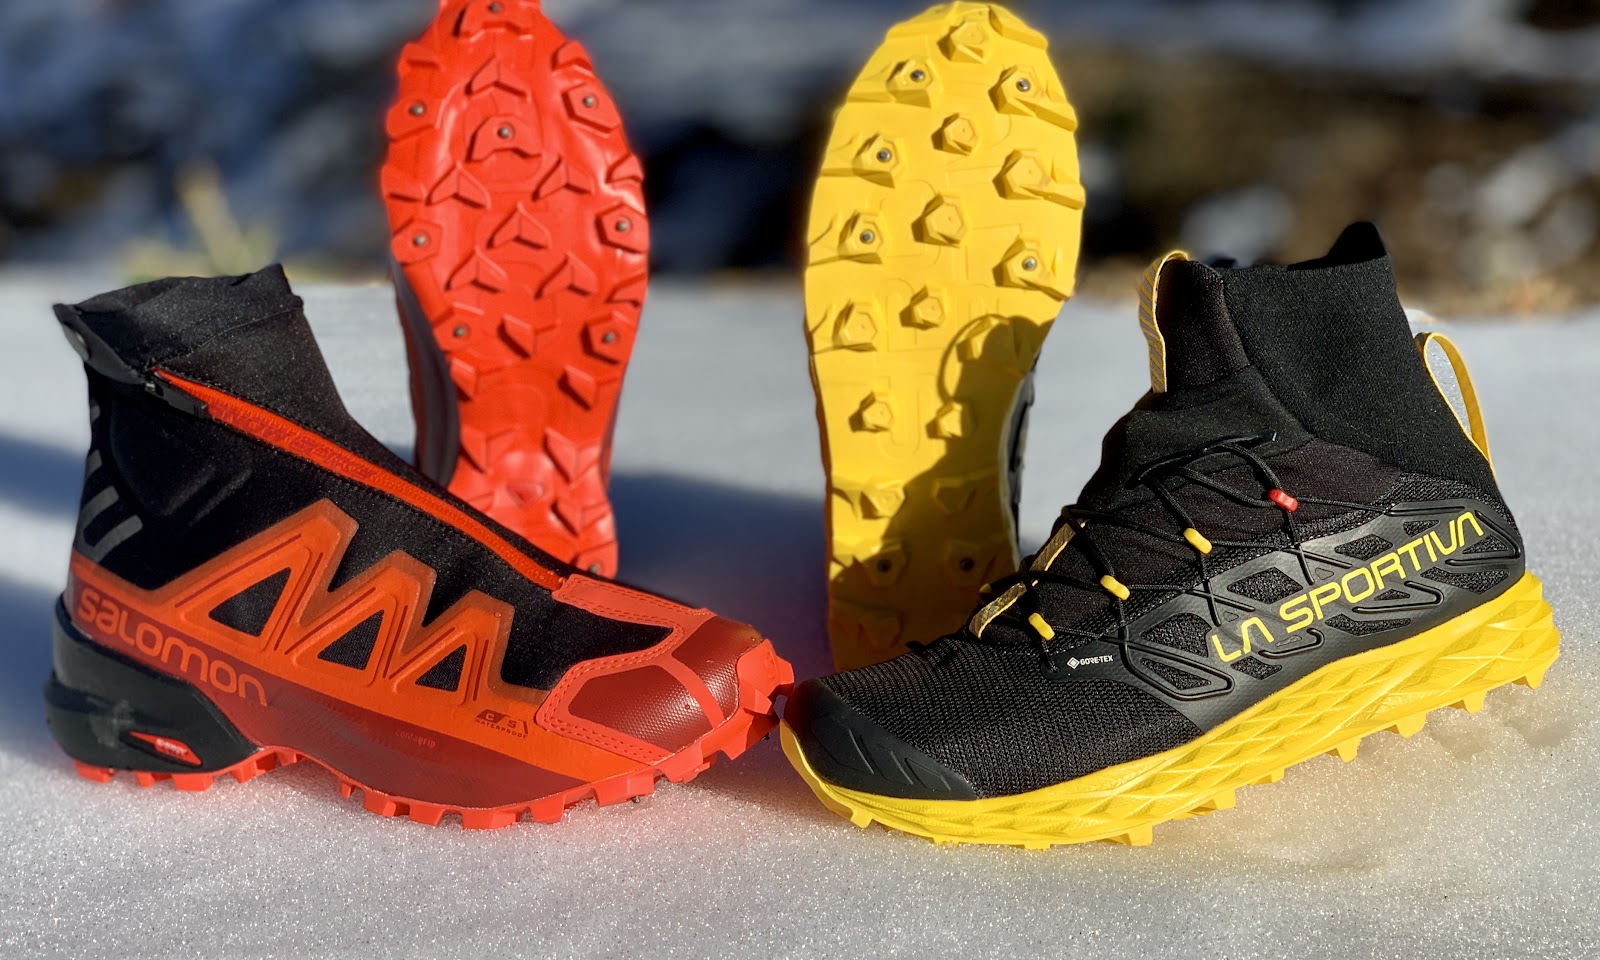 Zapatillas trail/running La Sportiva Blizzard Gtx (Black/Yellow